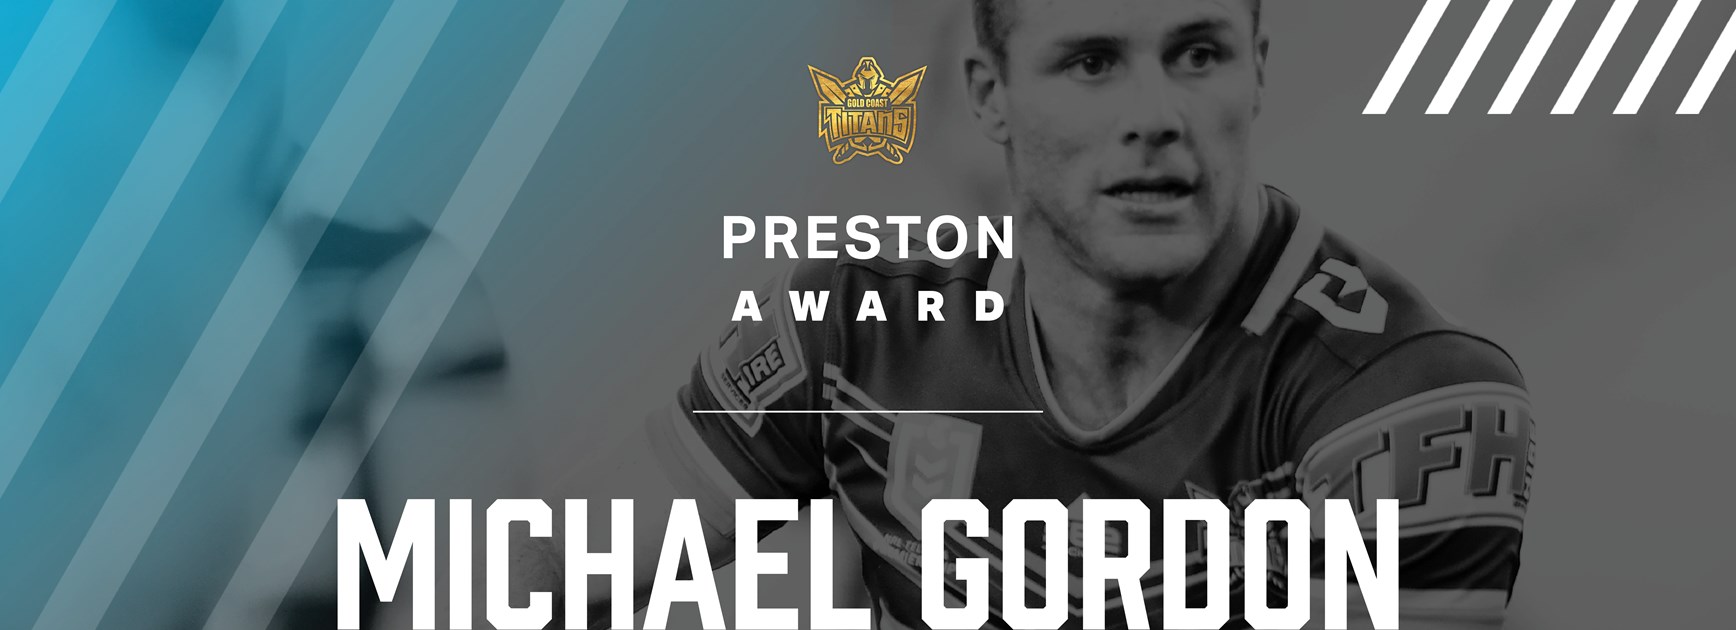 Michael Gordon takes home ‘The Preston’ as Titans farewell gift